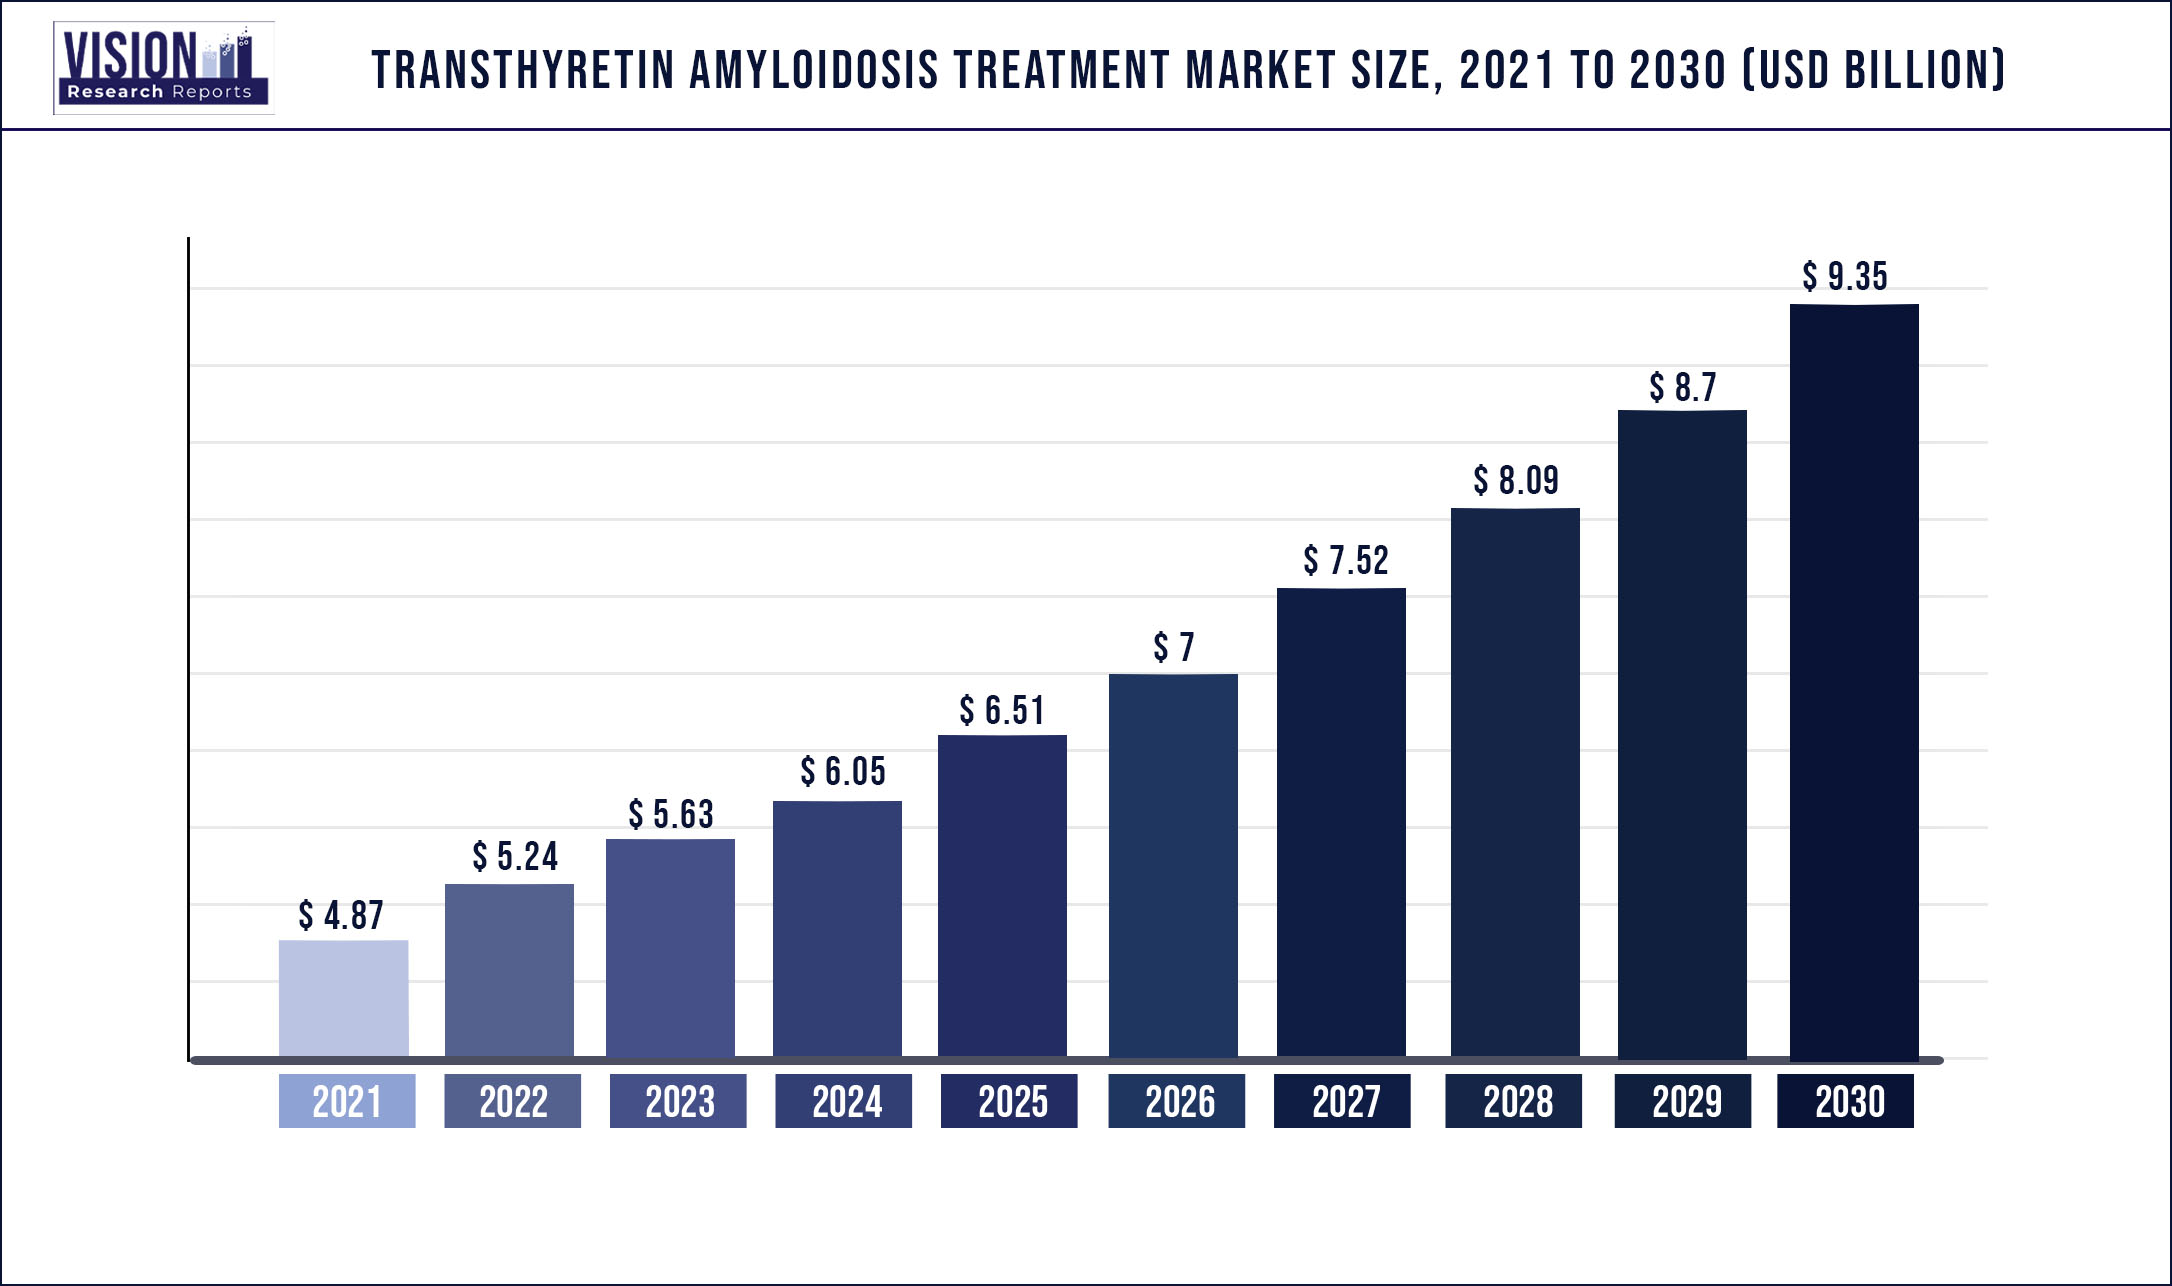 Transthyretin Amyloidosis Treatment Market Size 2021 to 2030